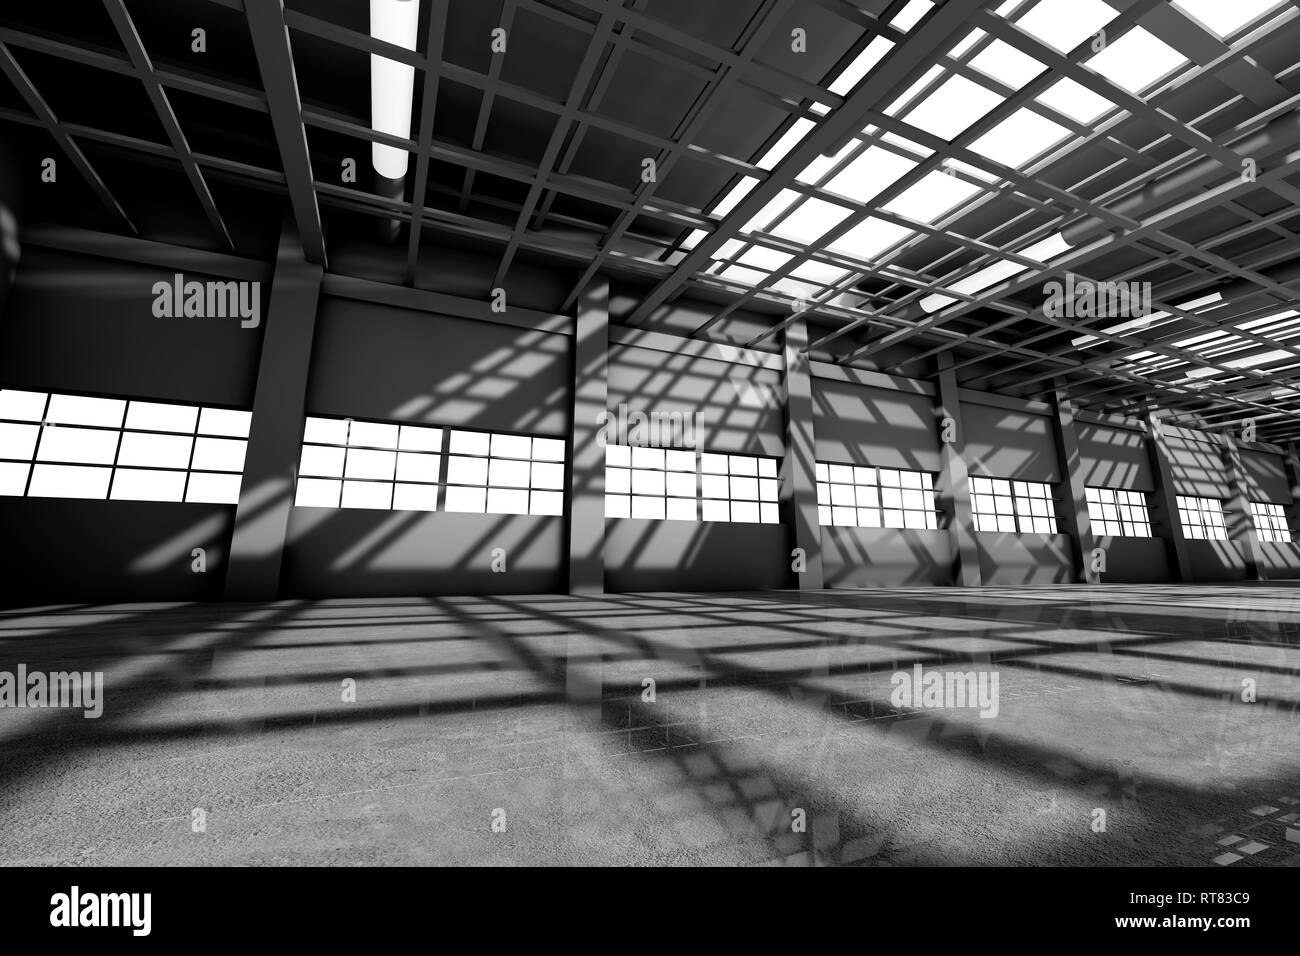 La visualisation de l'architecture d'un entrepôt vide, 3D Rendering Banque D'Images